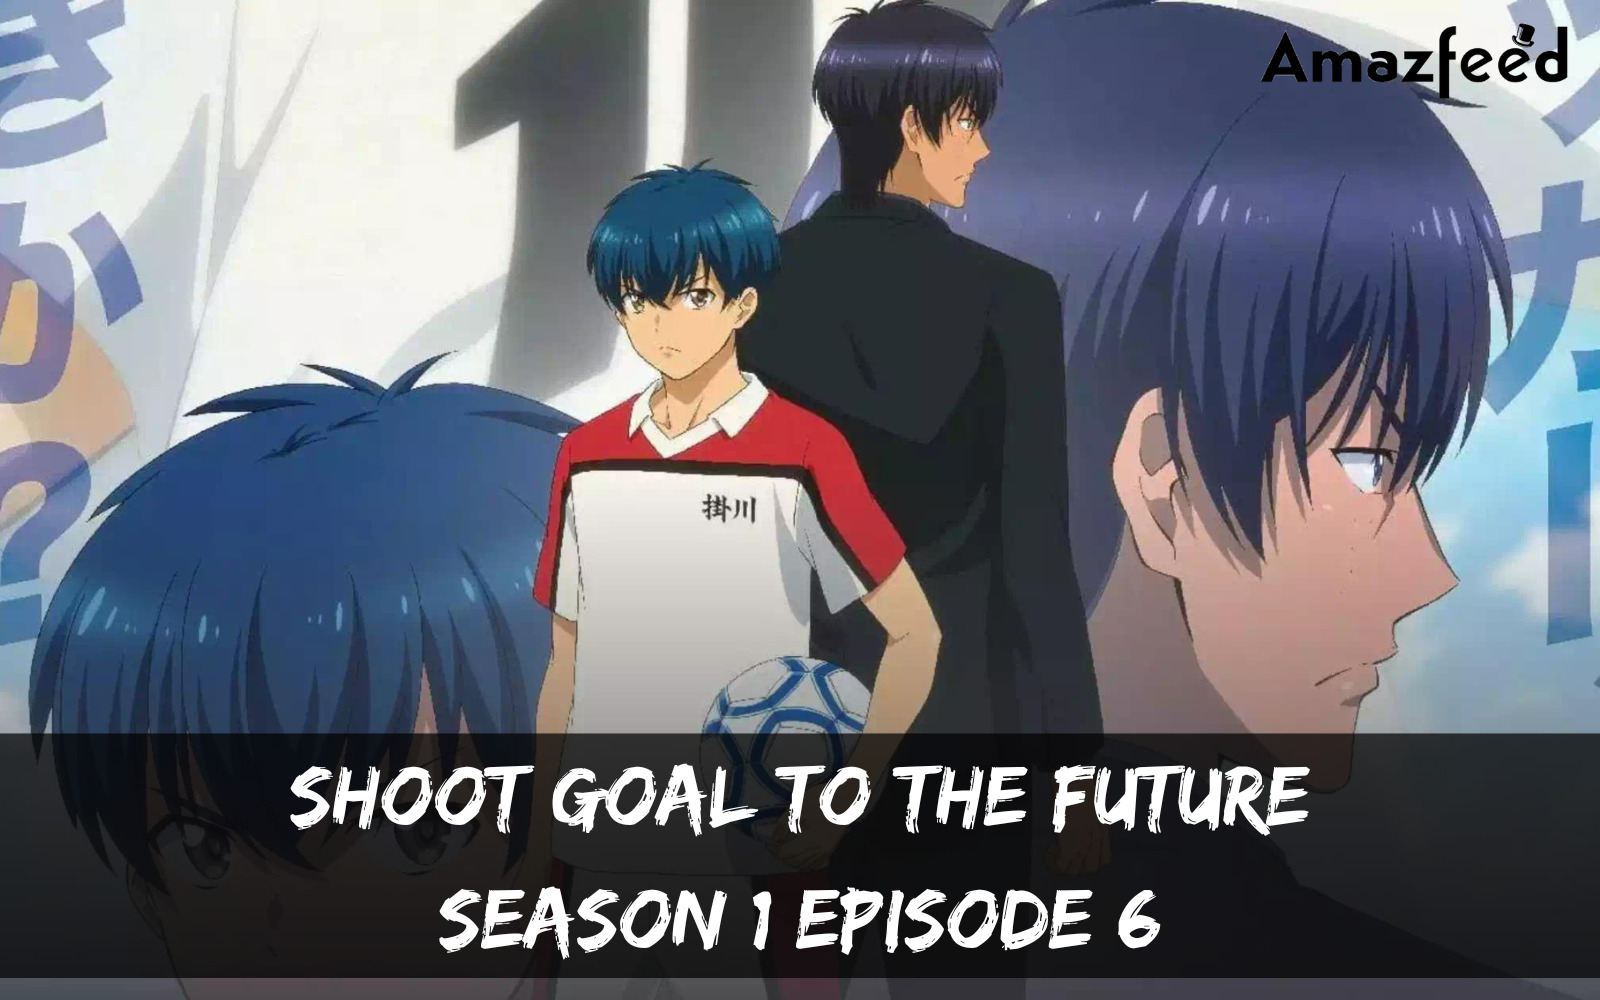 Shoot! Goal To The Future Season 1 Episode 7 : Release Date, Countdown, Spoiler, Recap & Teaser